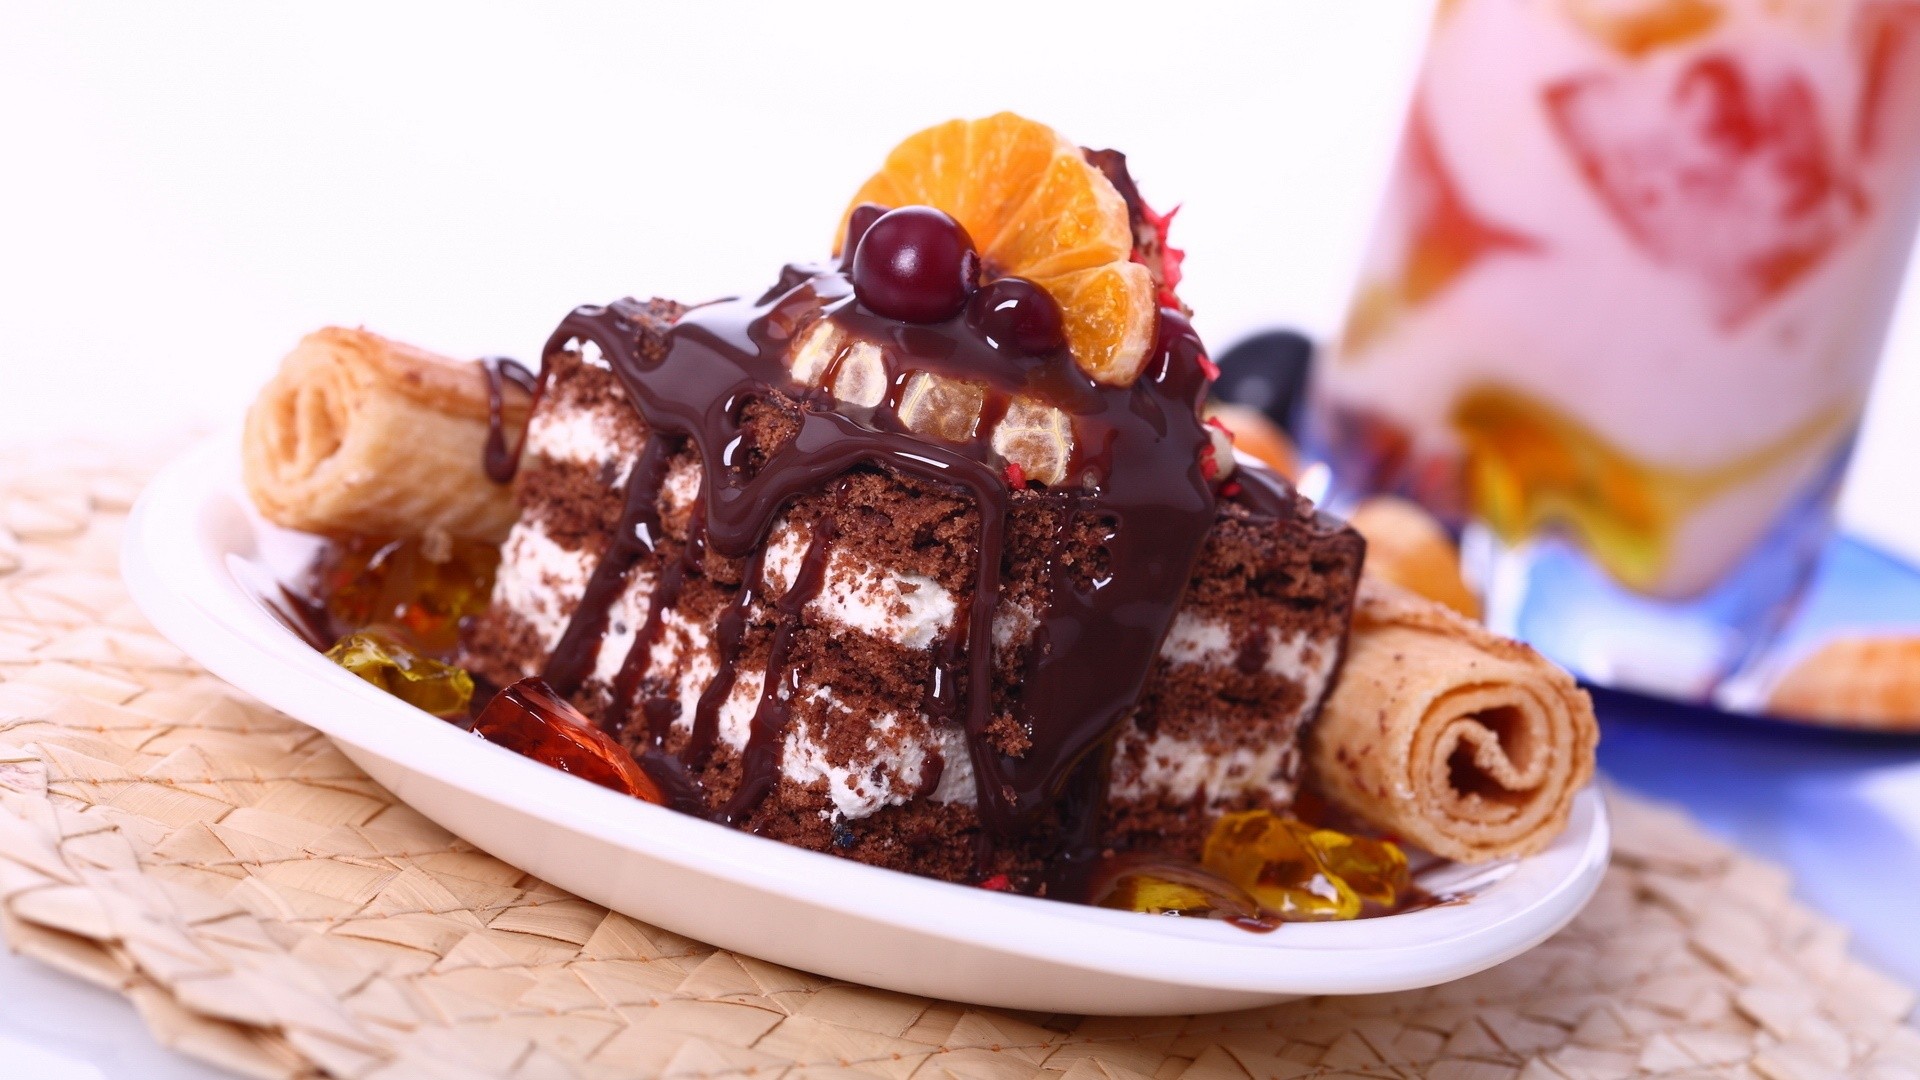 Chocolate Birthday Cake Wallpaper - Background Images Hd 1080p Food , HD Wallpaper & Backgrounds